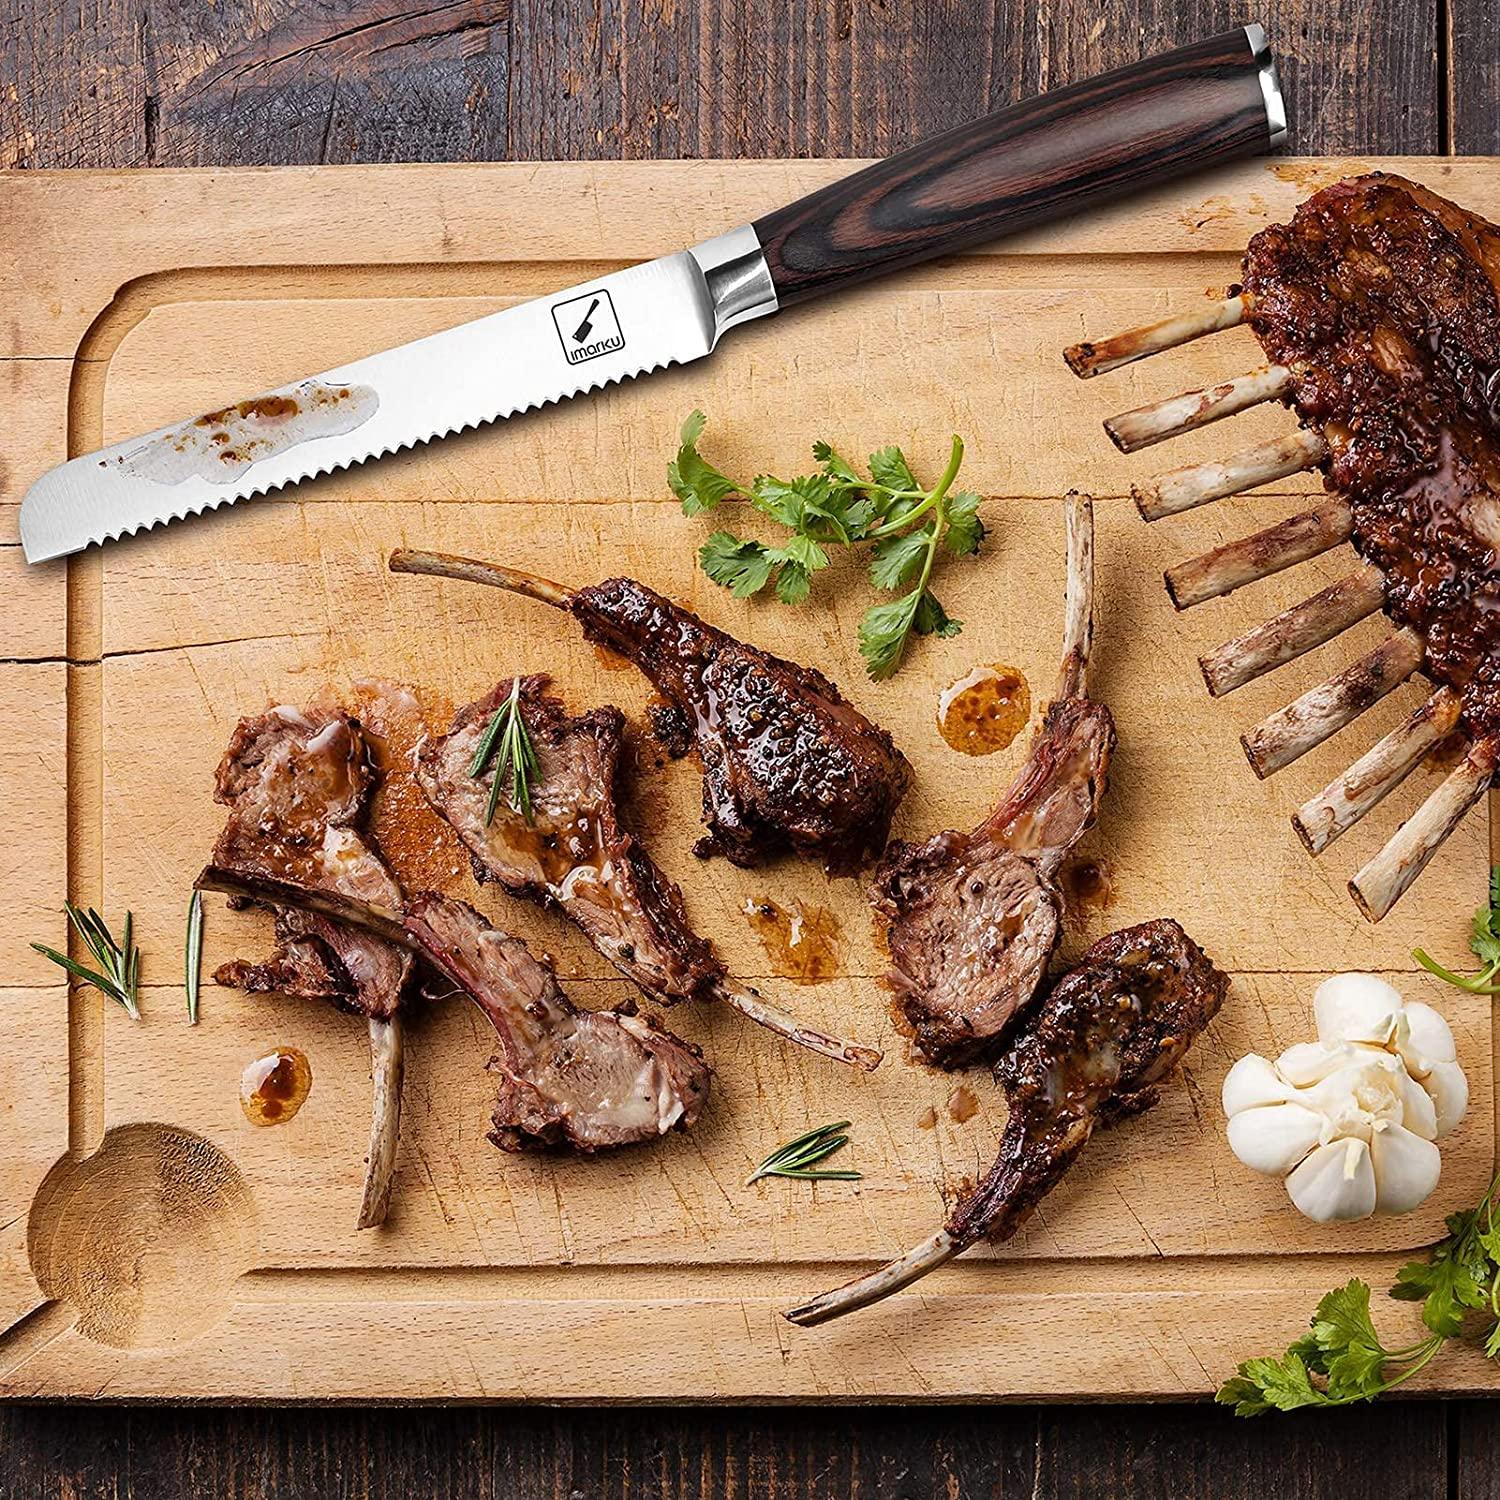 4-Piece Steak Knife Set | imarku - IMARKU